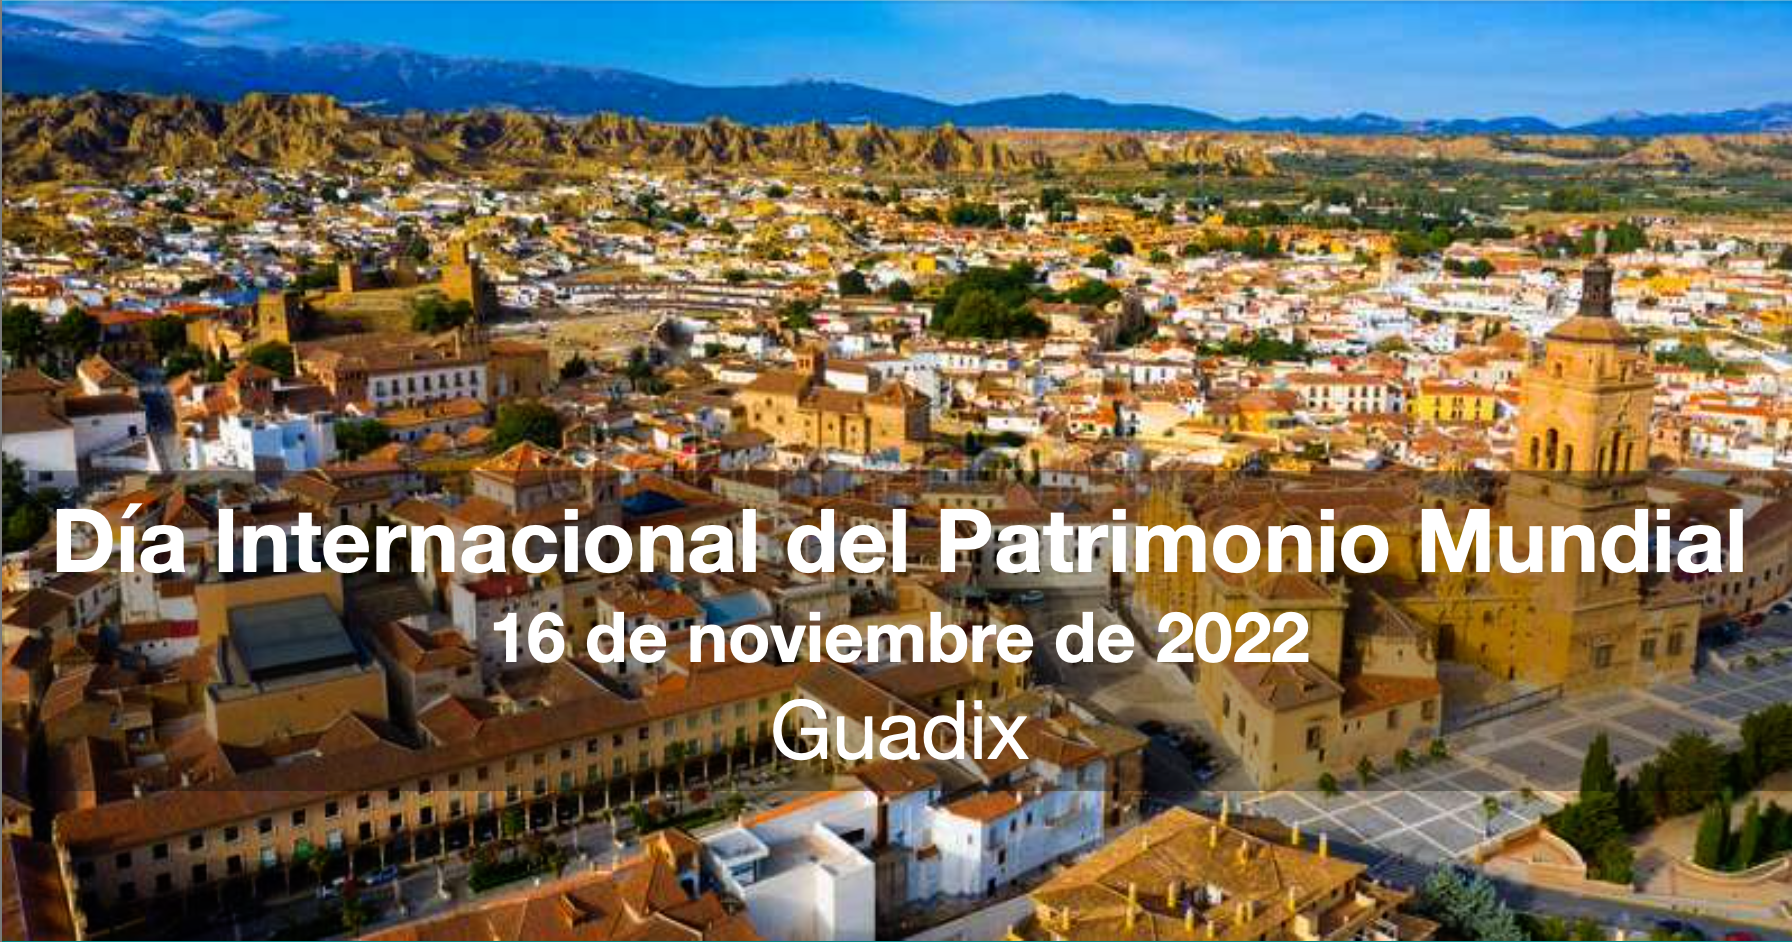 dia internacional patrimonio - Día Internacional de del Patrimonio Mundial. Guadix, 16 de noviembre de 2022. - Geoparque de Granada